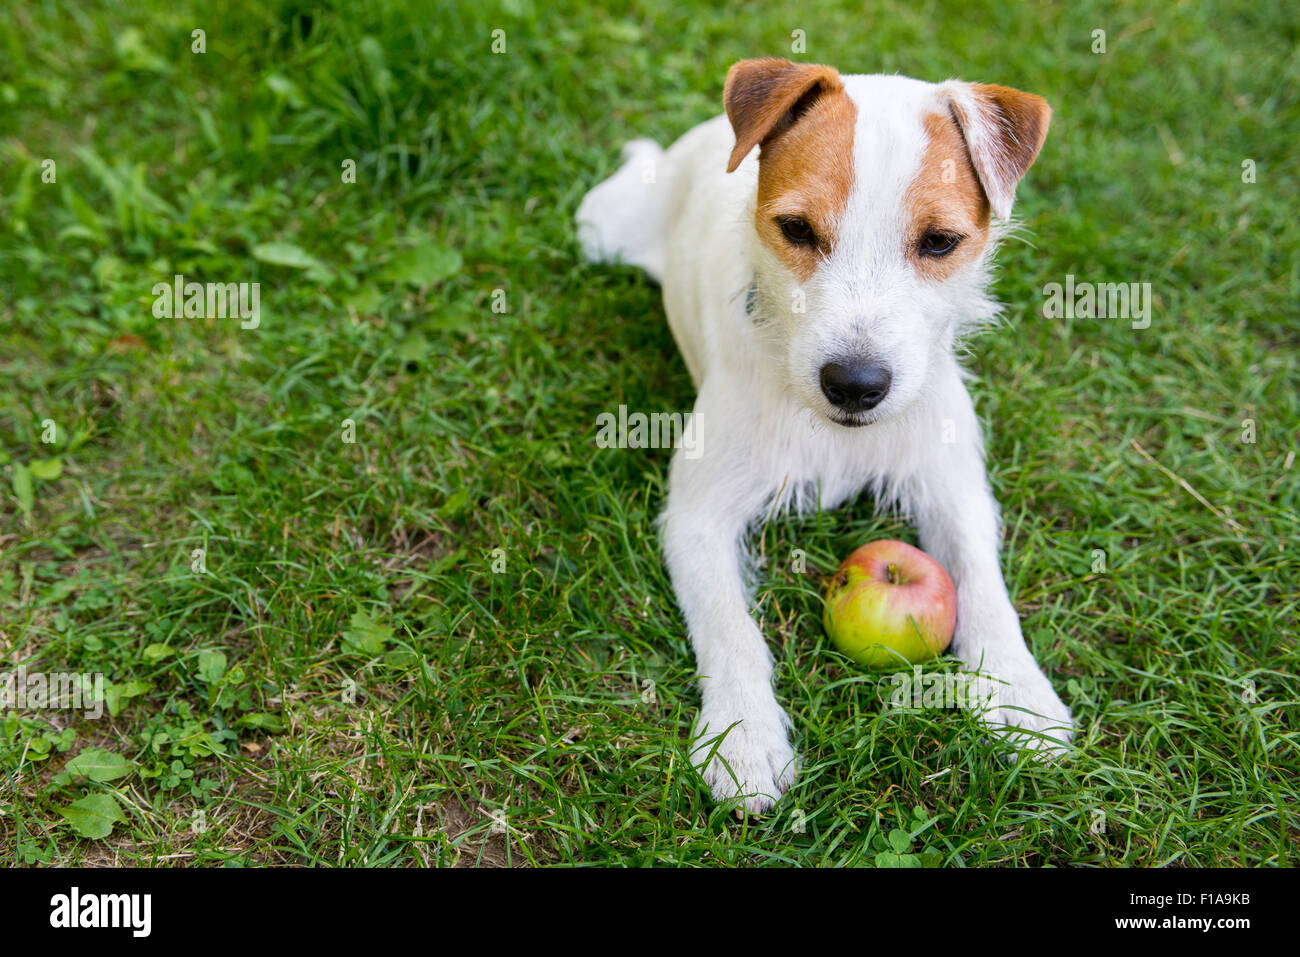 Jack Parson Russell Terrier Welpe Hund Haustier, tan rau beschichtet,  draußen im Park während des Spielens mit Apple Spielzeug, Porträt, liegend  Stockfotografie - Alamy